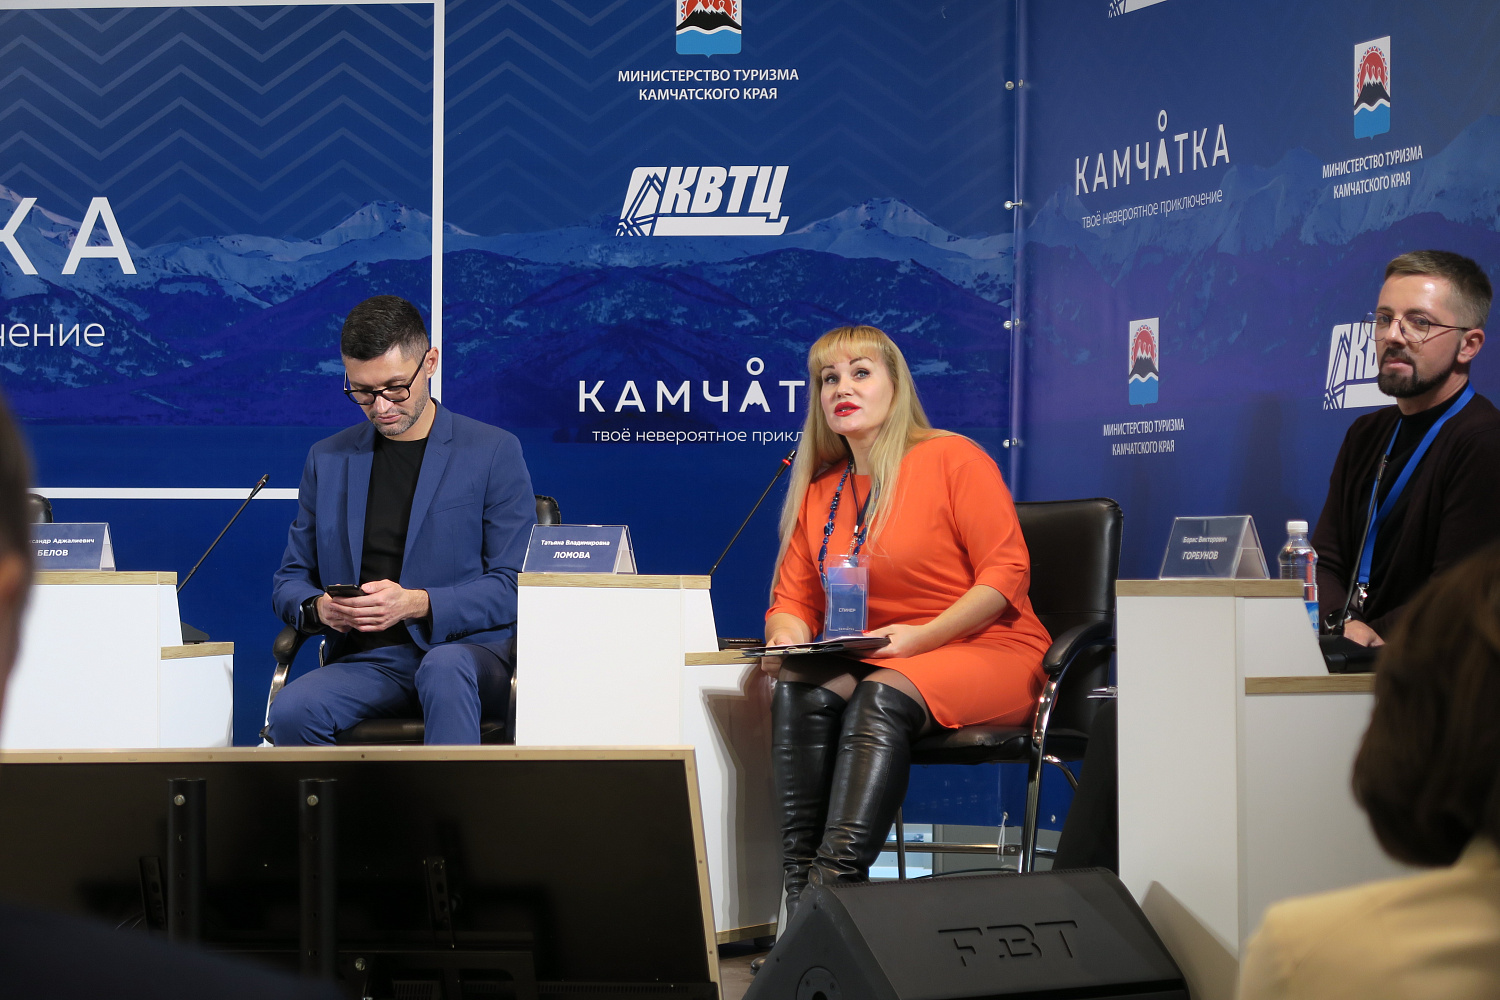 Центр поддержки экспорта Камчатского края принял участие в Межрегиональном туристическом форуме «Камчатка — твое невероятное приключение»